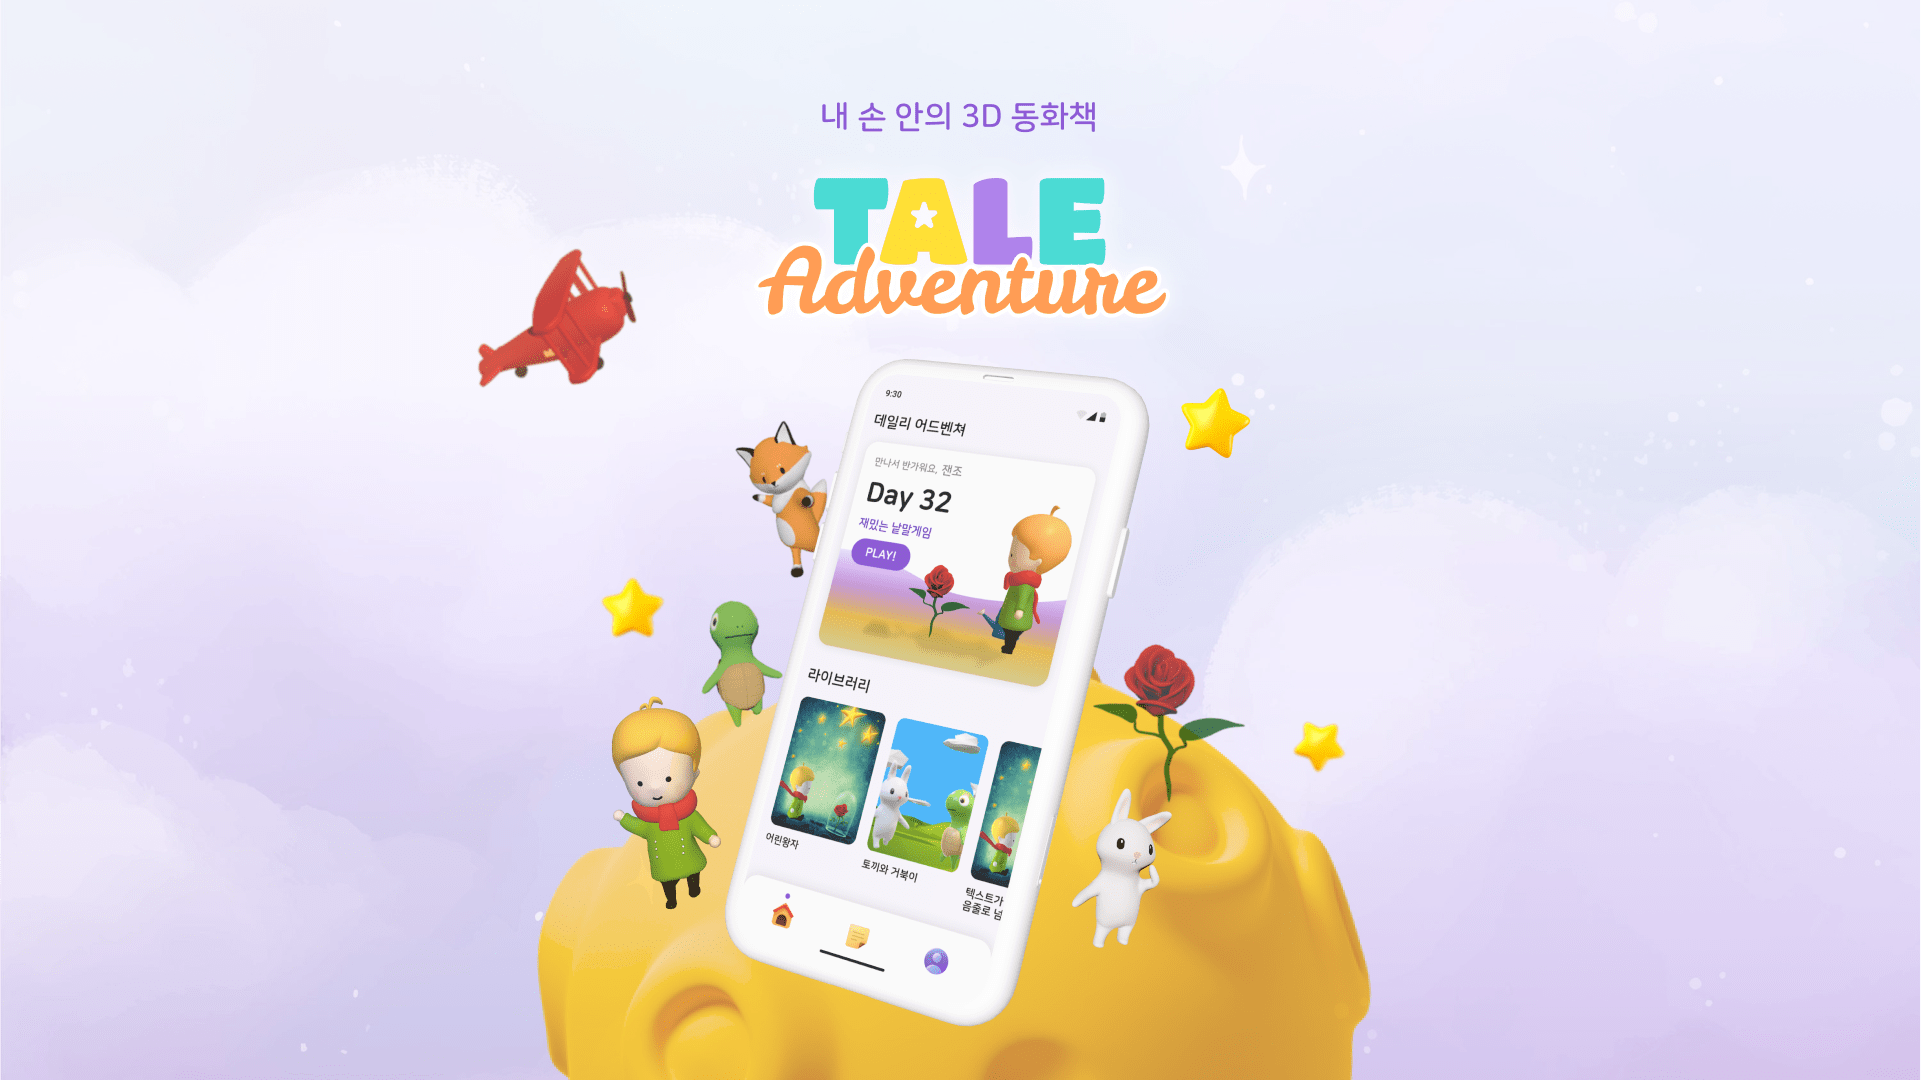 [UX/UI] Tale Adventure 모바일 앱